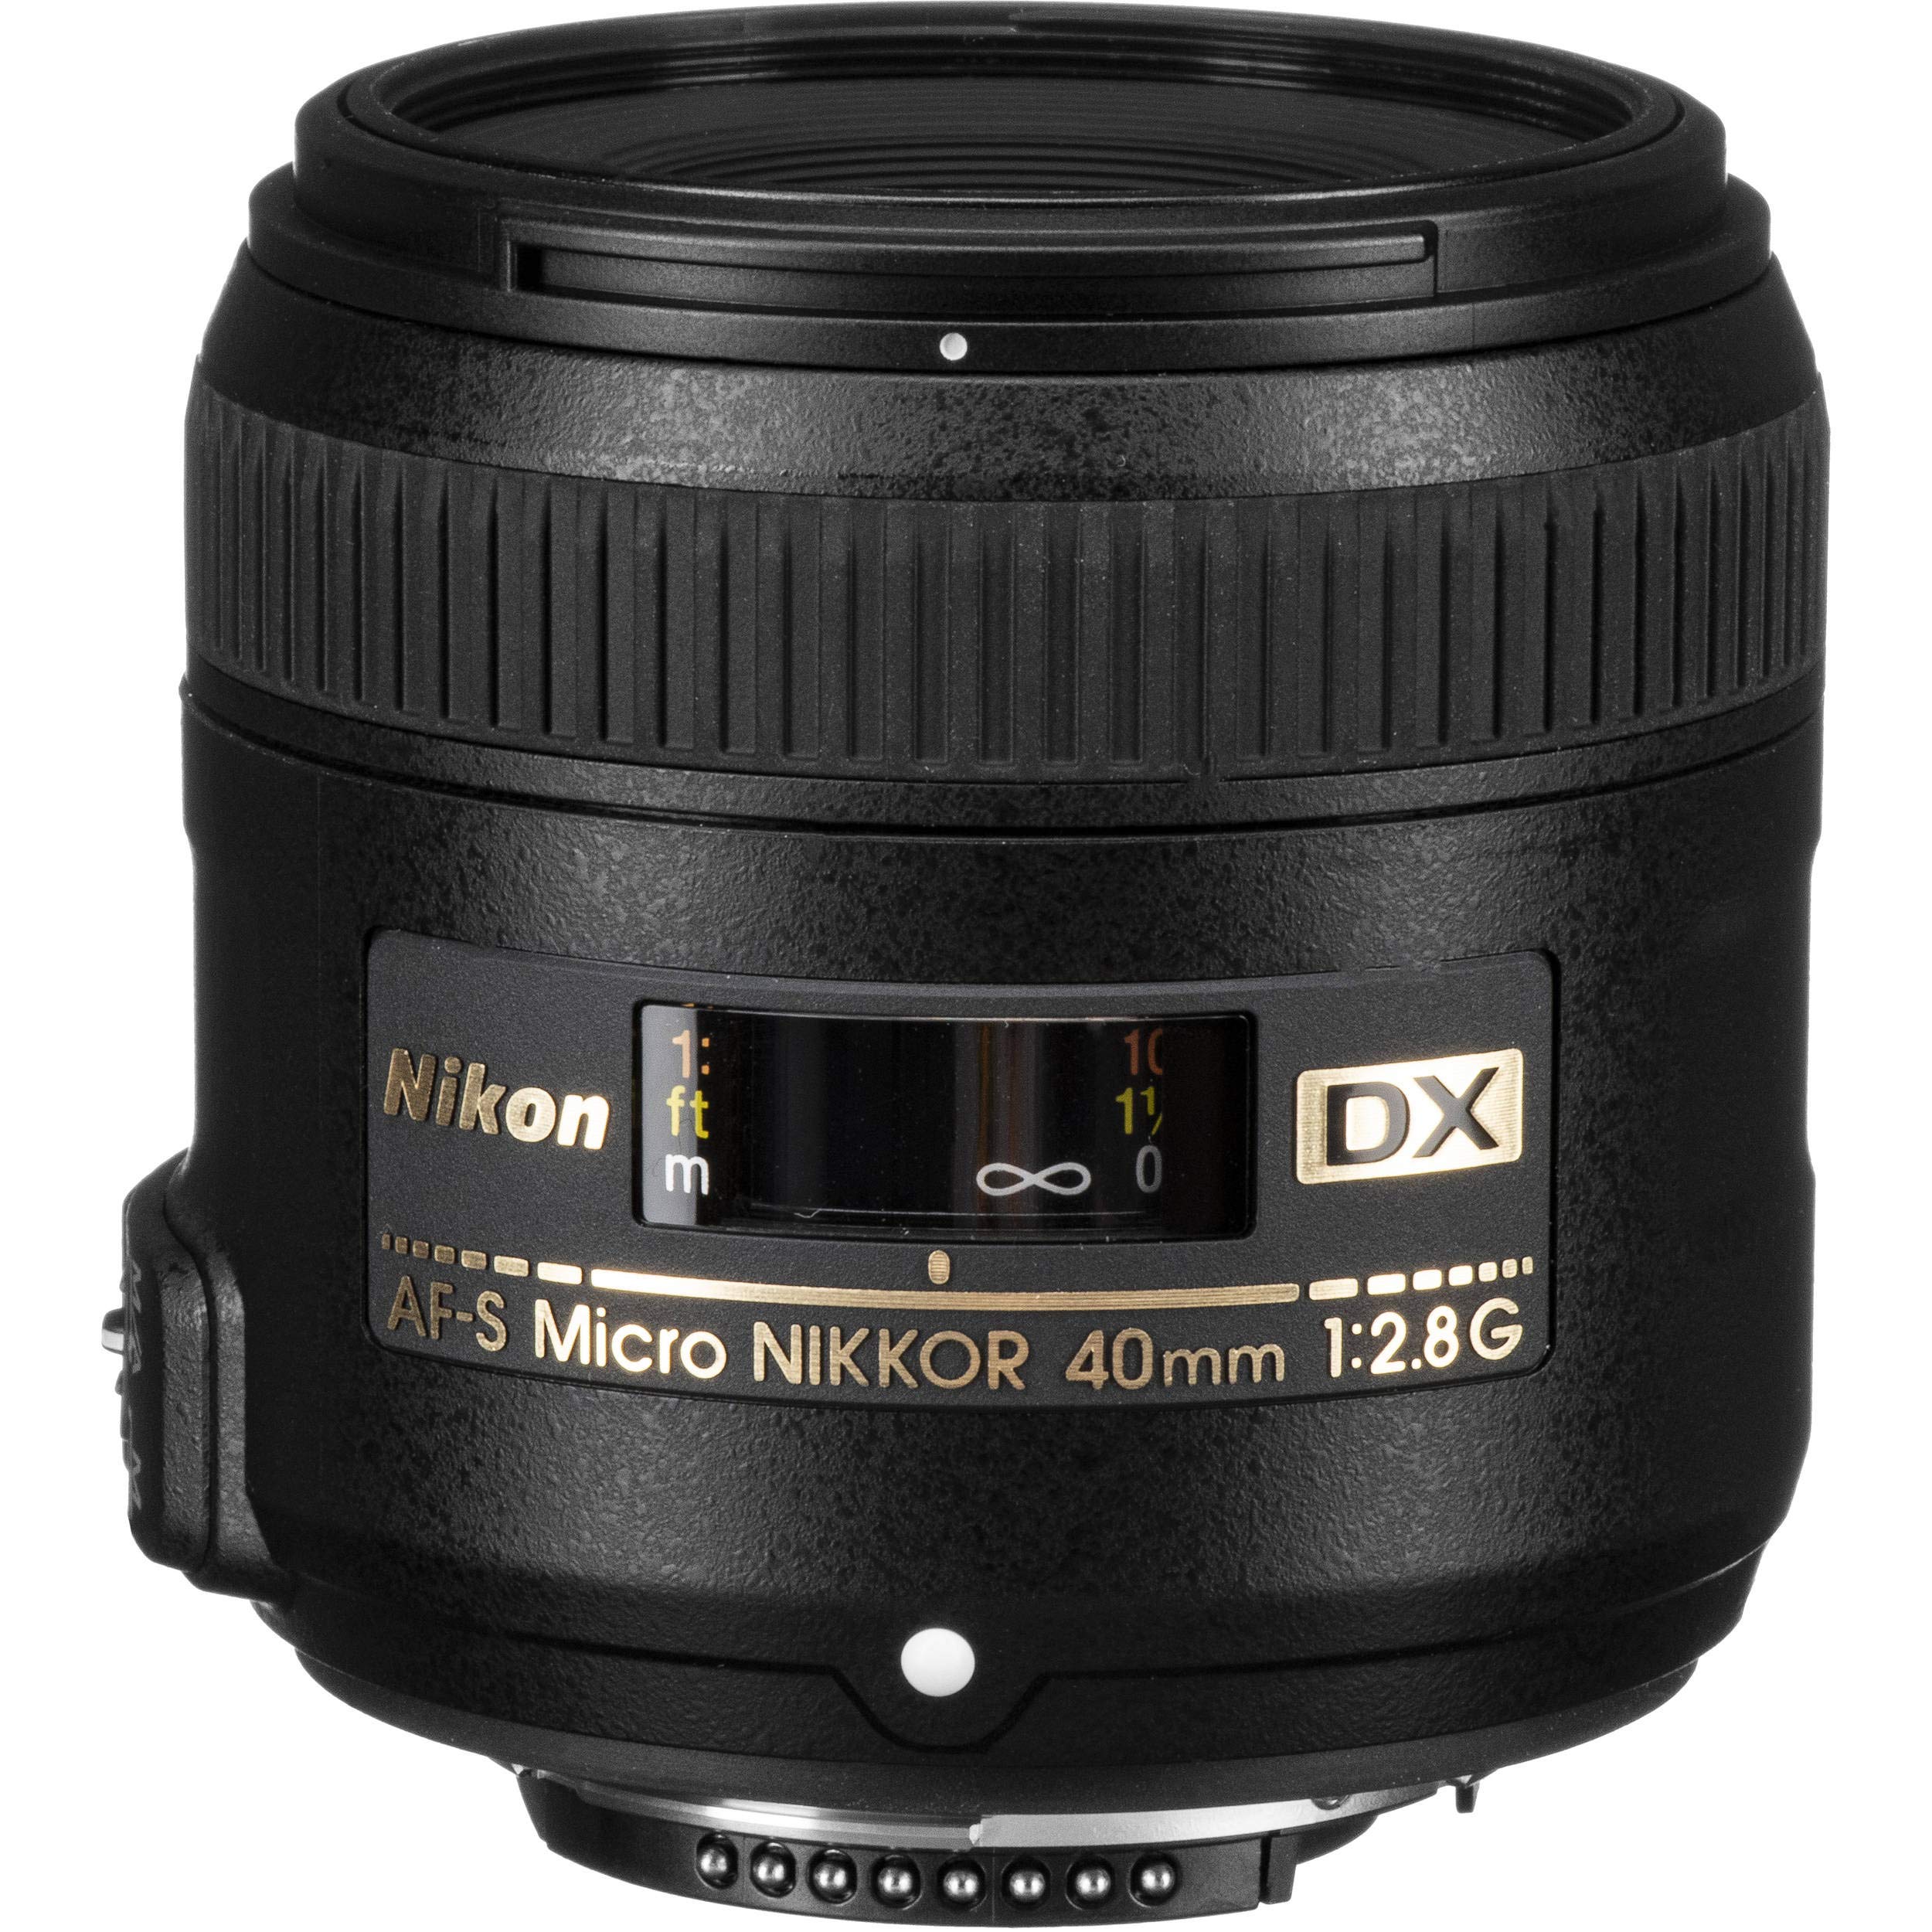 Nikon AF-S DX Micro NIKKOR 40mm F.2.8G Lens (International Model) + 3pcs Lens Filter Kit + Cleaning Kit